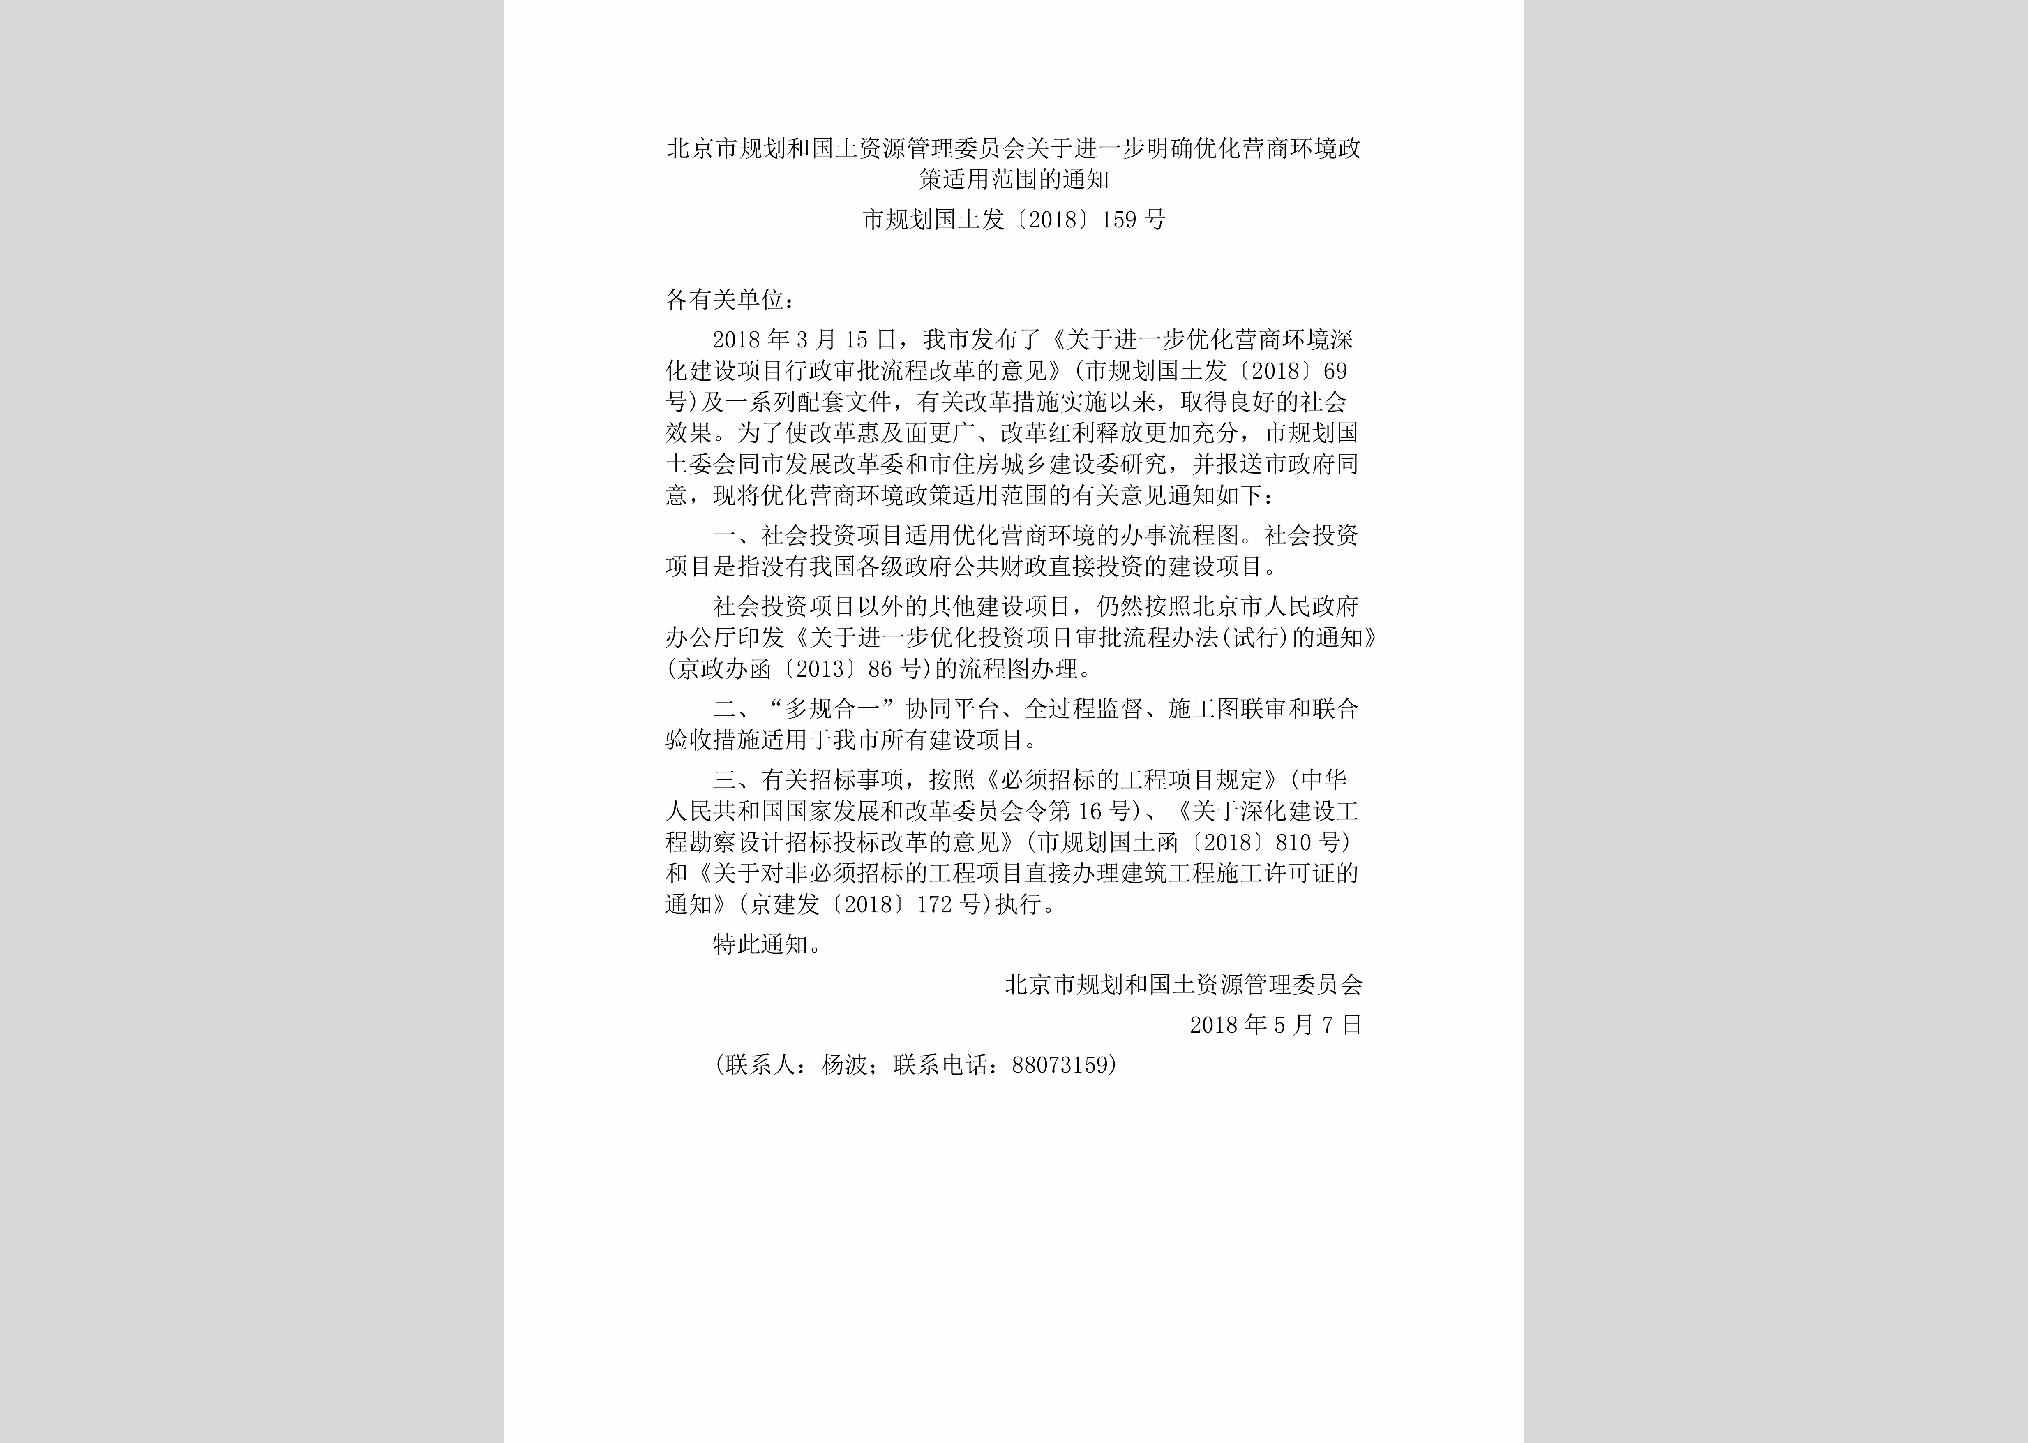 市规划国土发[2018]159号：北京市规划和国土资源管理委员会关于进一步明确优化营商环境政策适用范围的通知